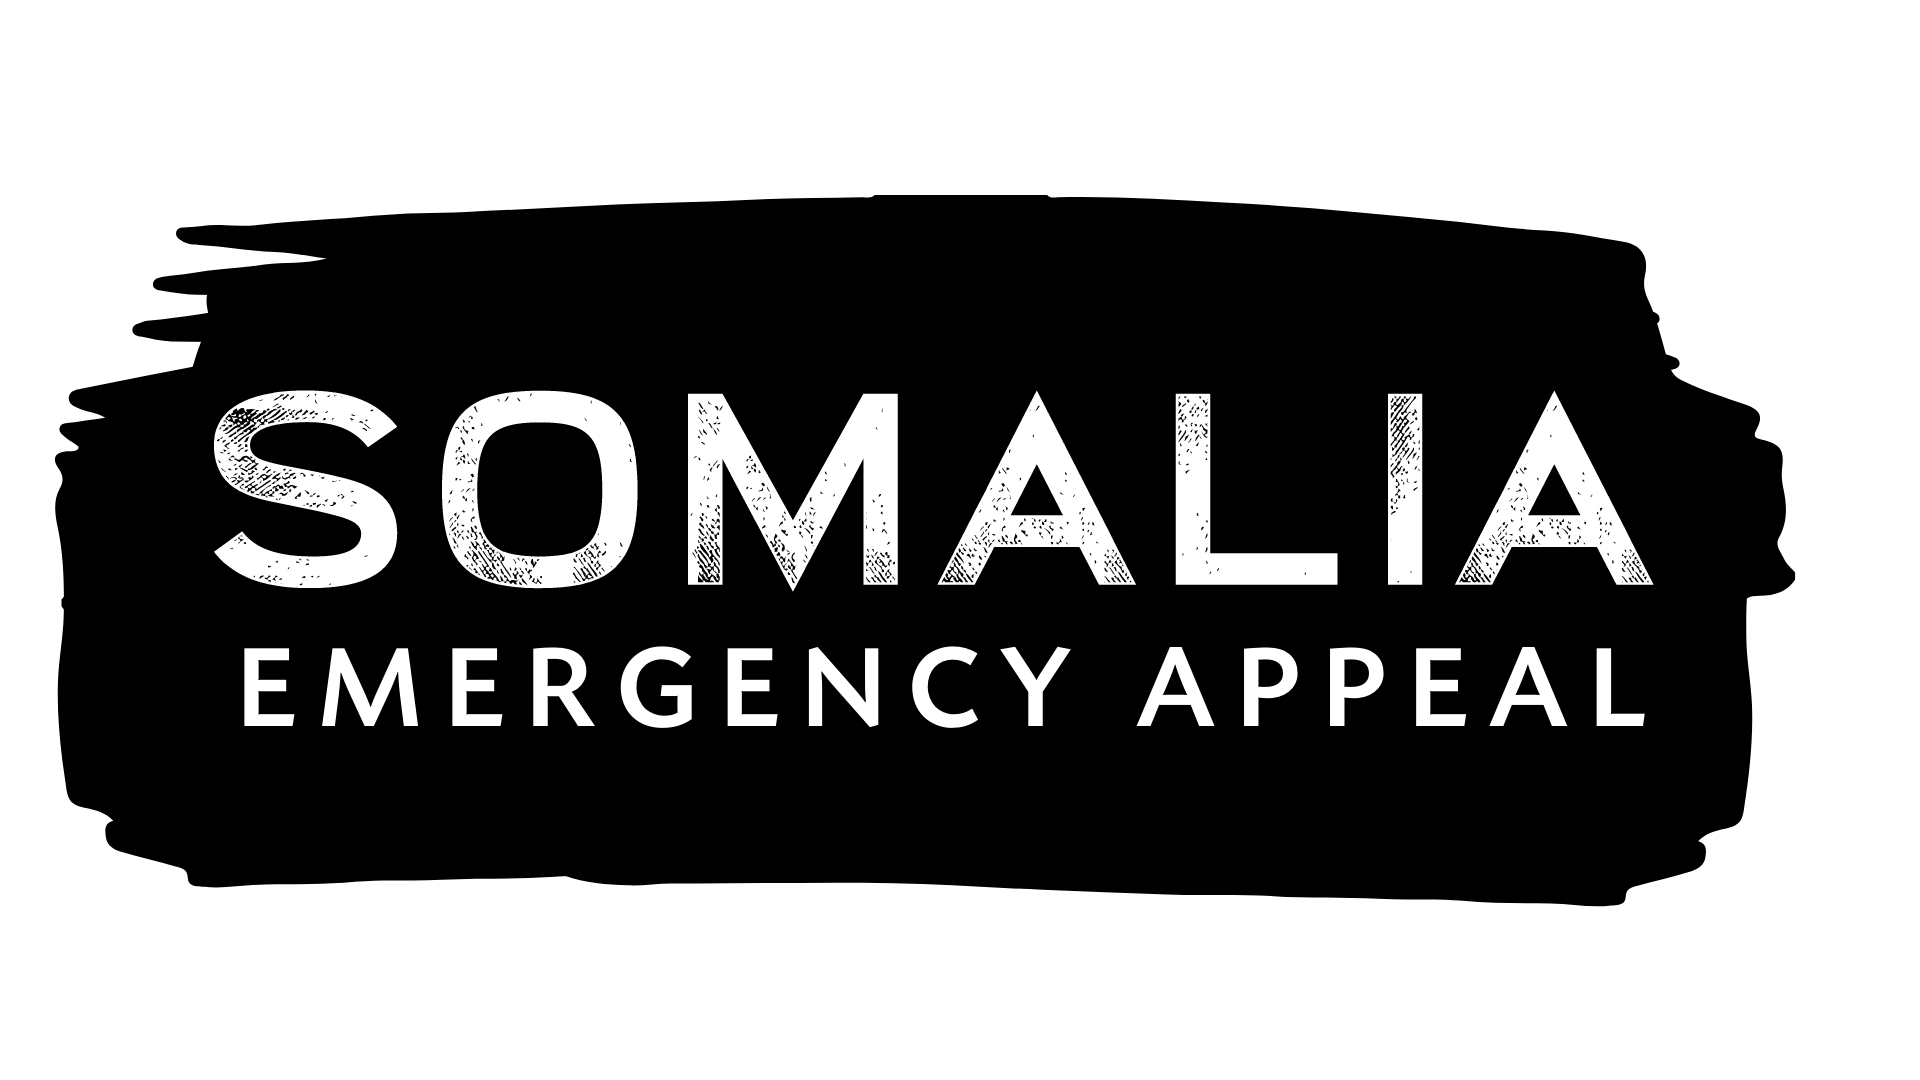 Somalia Emergency